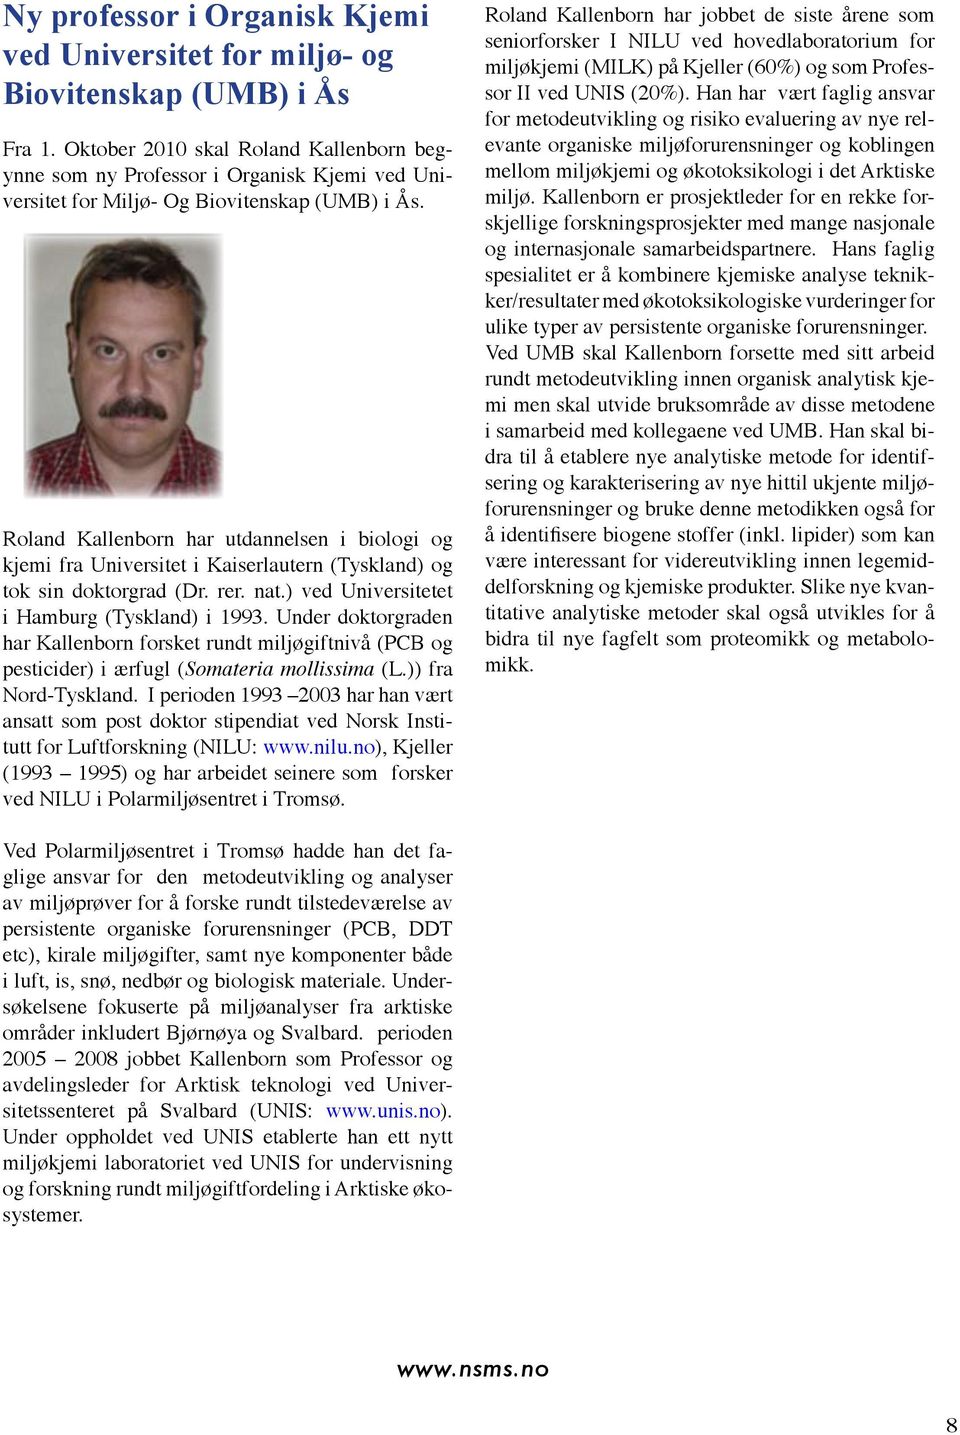 Roland Kallenborn har utdannelsen i biologi og kjemi fra Universitet i Kaiserlautern (Tyskland) og tok sin doktorgrad (Dr. rer. nat.) ved Universitetet i Hamburg (Tyskland) i 1993.